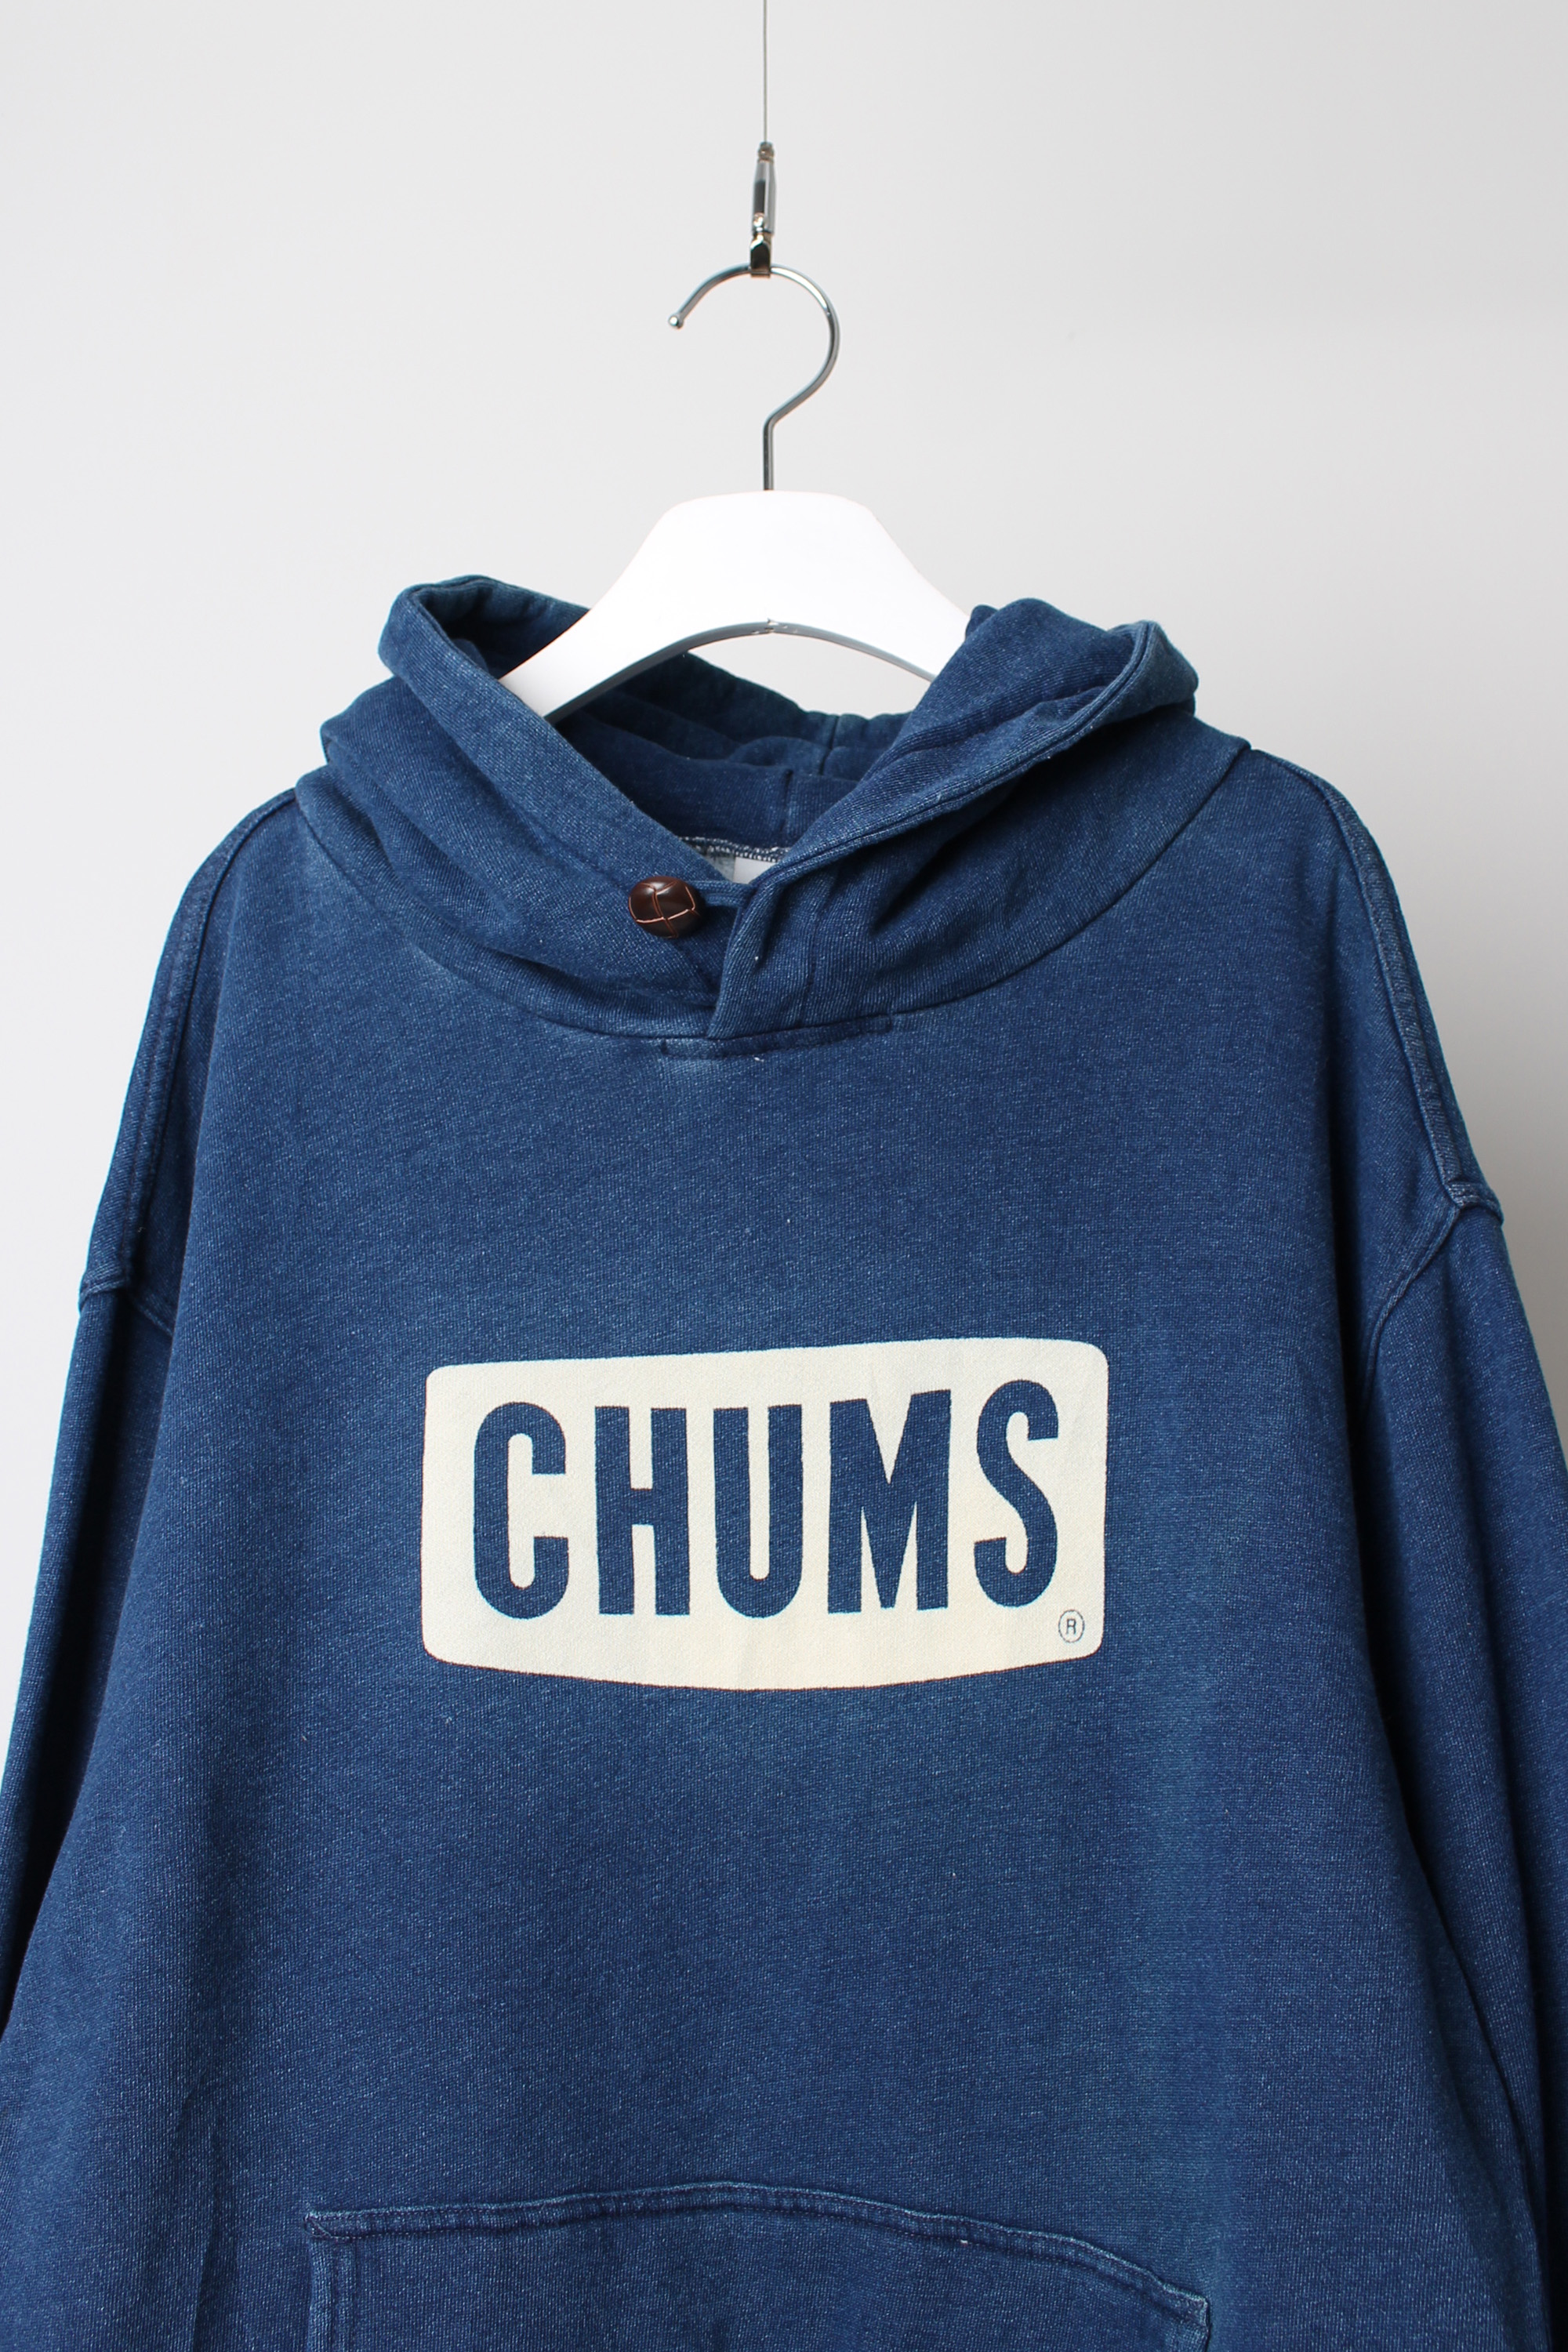 CHUMS hoodie